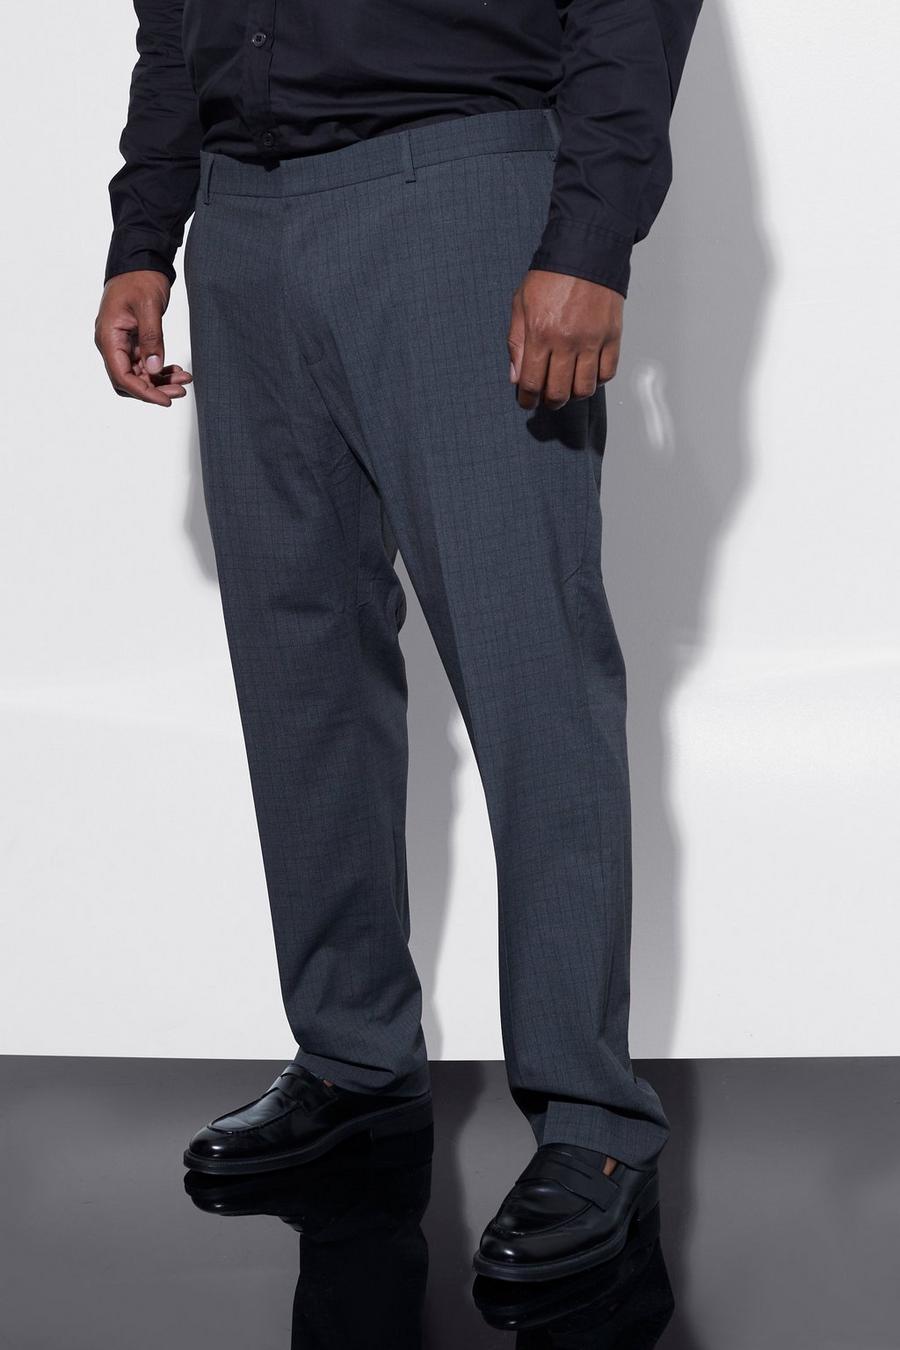 Pantaloni sartoriali Plus Size Slim Fit a quadri, Dark grey gris